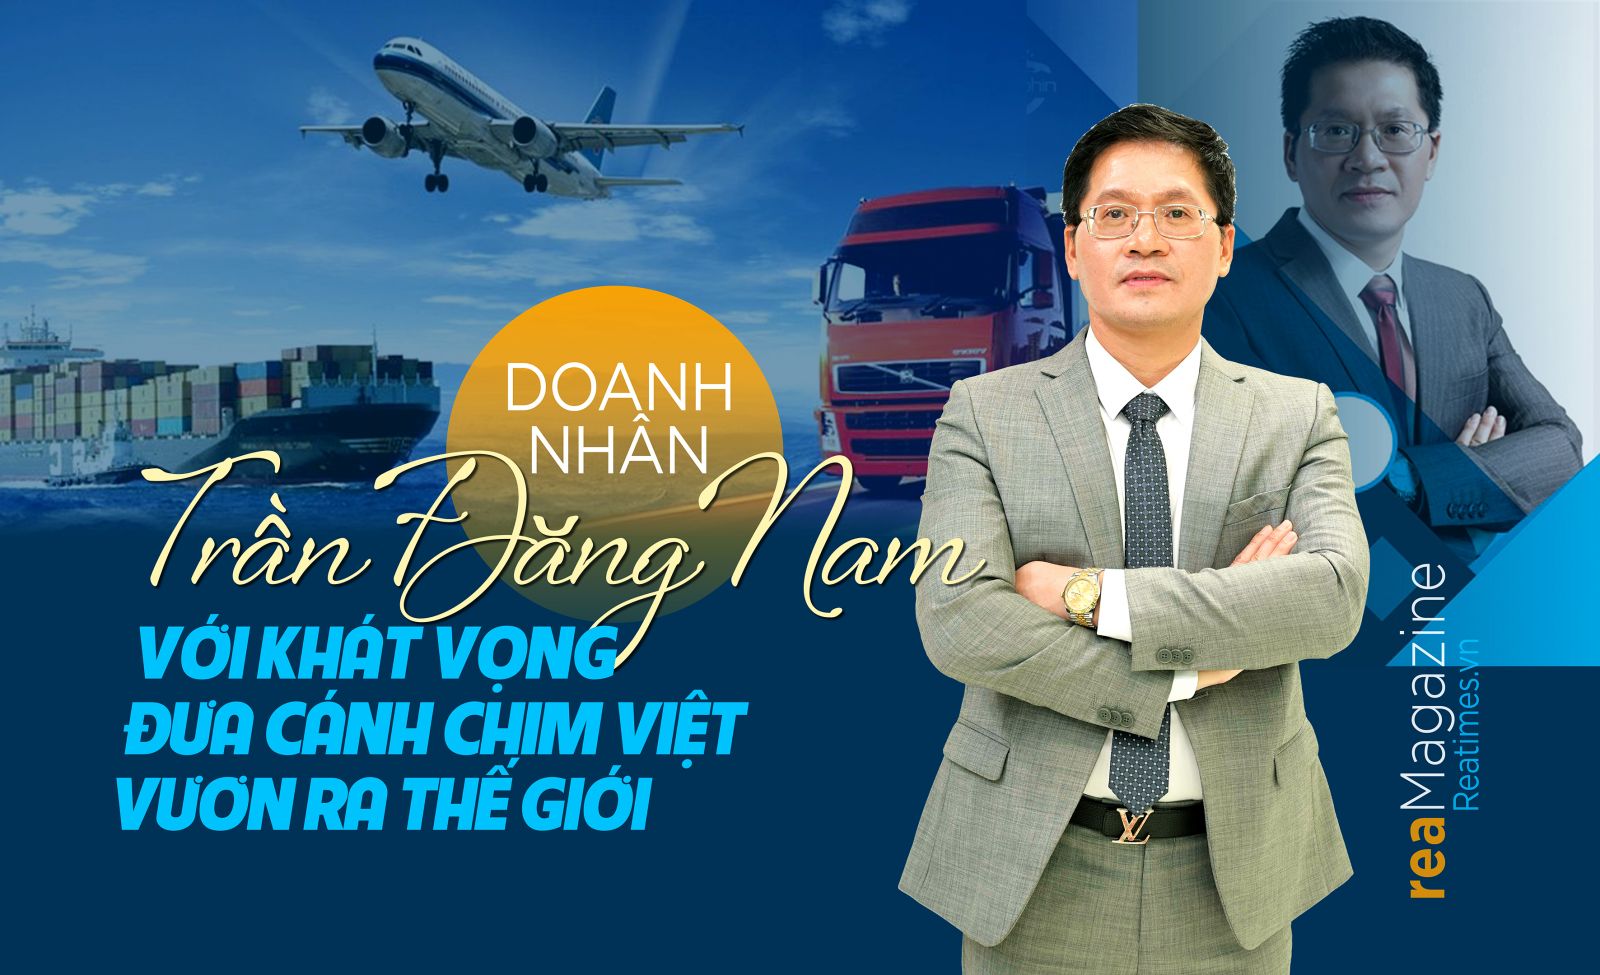 Doanh nhân Trần Đăng Nam với khát vọng đưa cánh chim Việt vươn ra thế giới